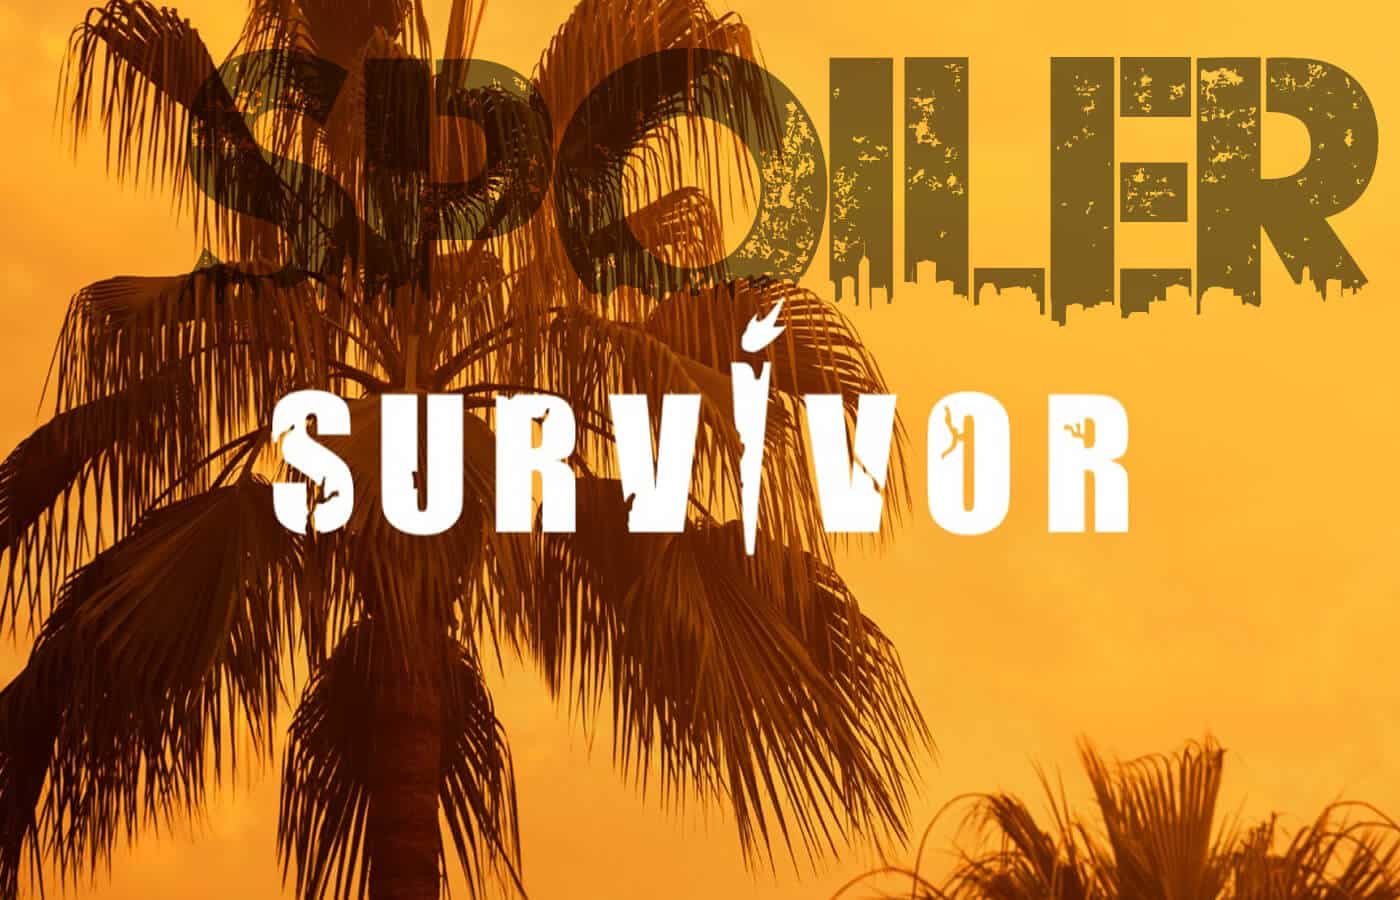 Survivor spoiler 2024